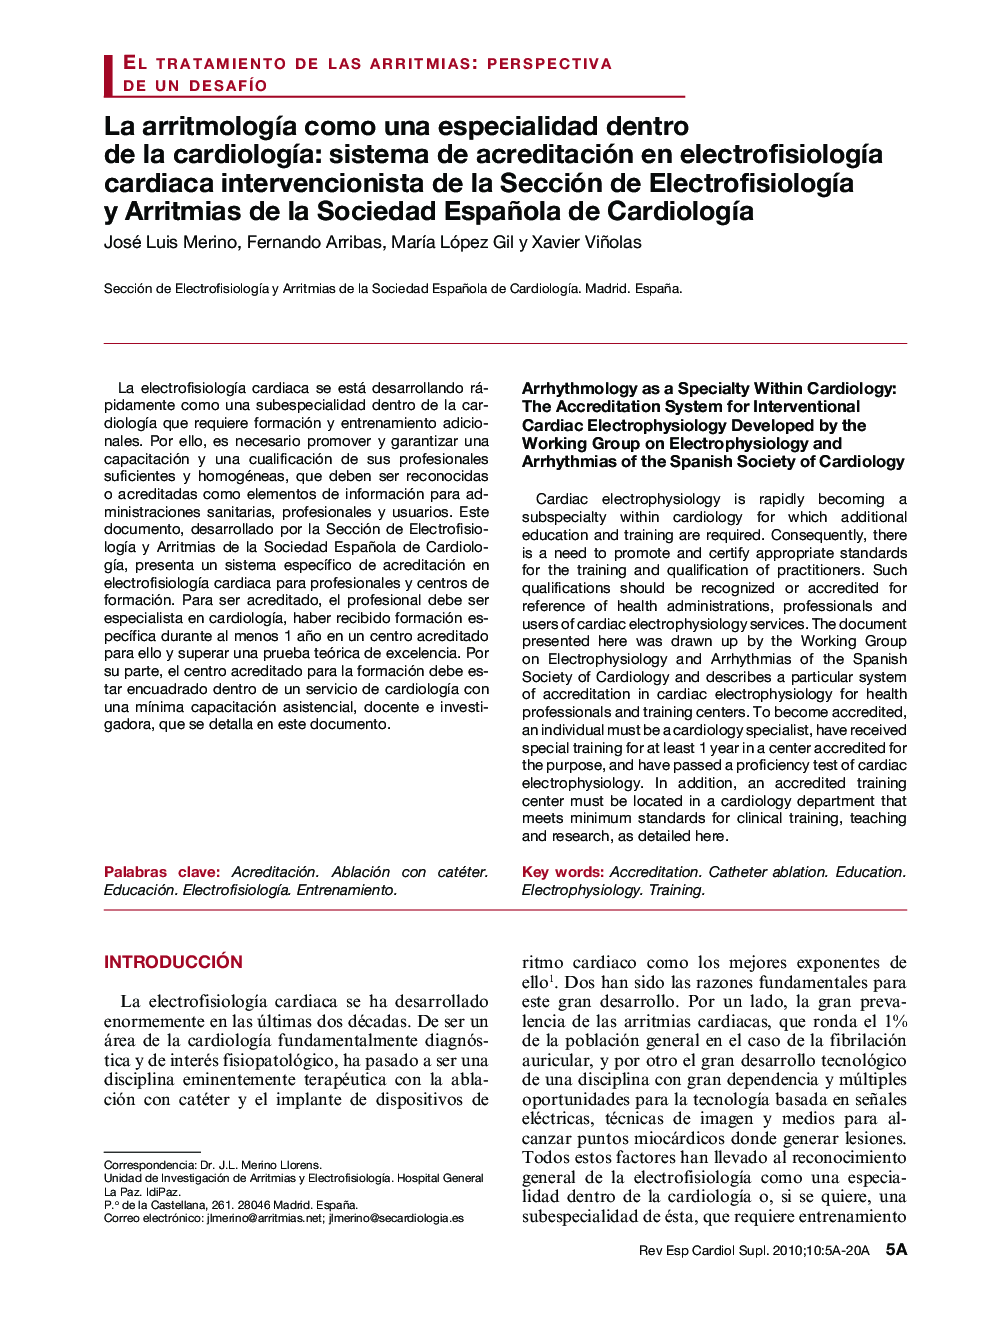 La arritmologÃ­a como una especialidad dentro de la cardiologÃ­a: sistema de acreditación en electrofisiologÃ­a cardiaca intervencionista de la Sección de ElectrofisiologÃ­a y Arritmias de la Sociedad Española de CardiologÃ­a